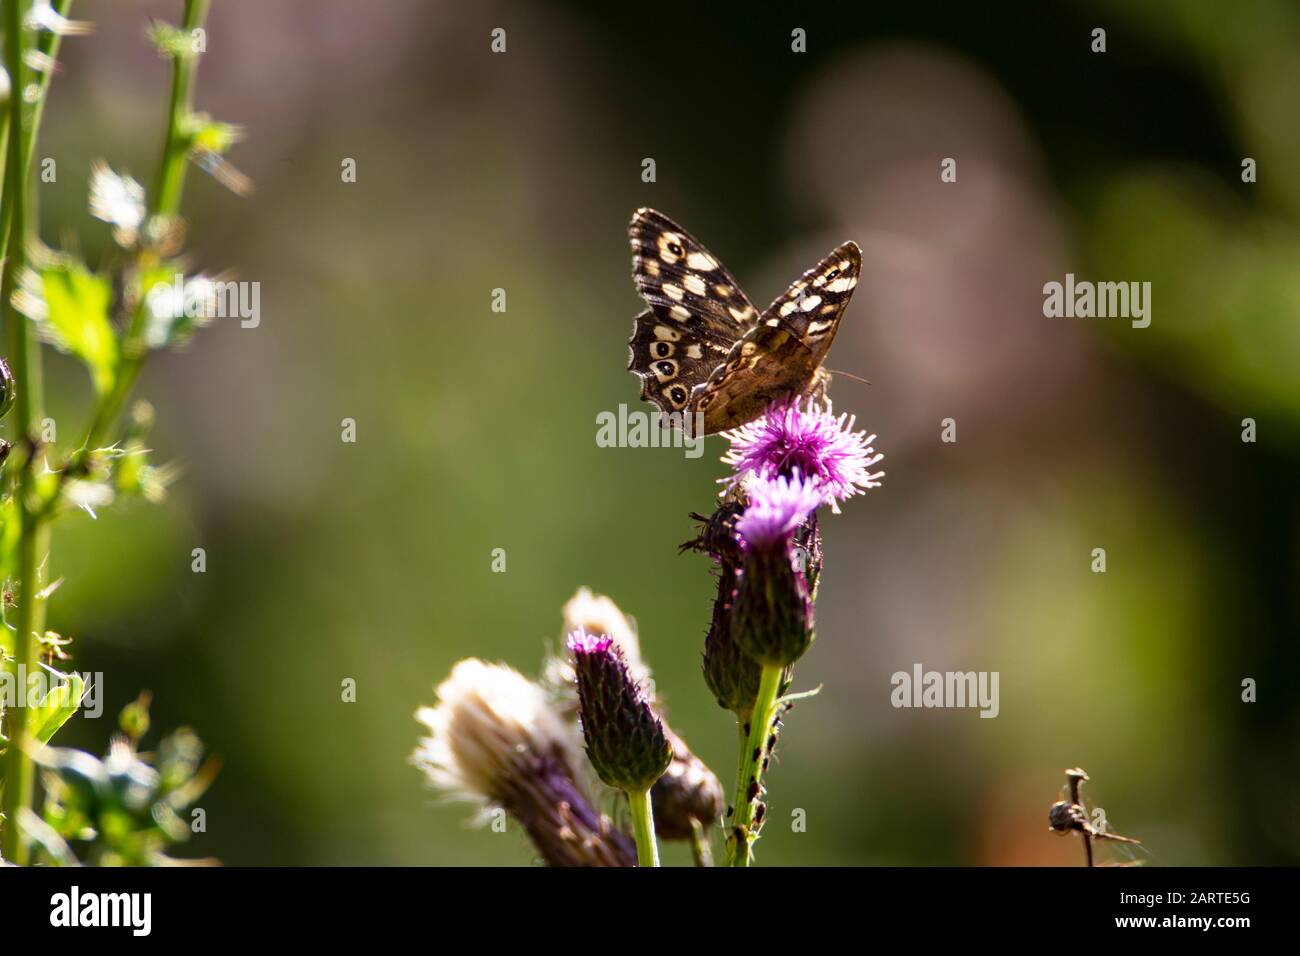 Speckled farfalla di legno Pararge aegeria atterraggio su un fiore di thistle e illuminato dal sole del mattino Foto Stock